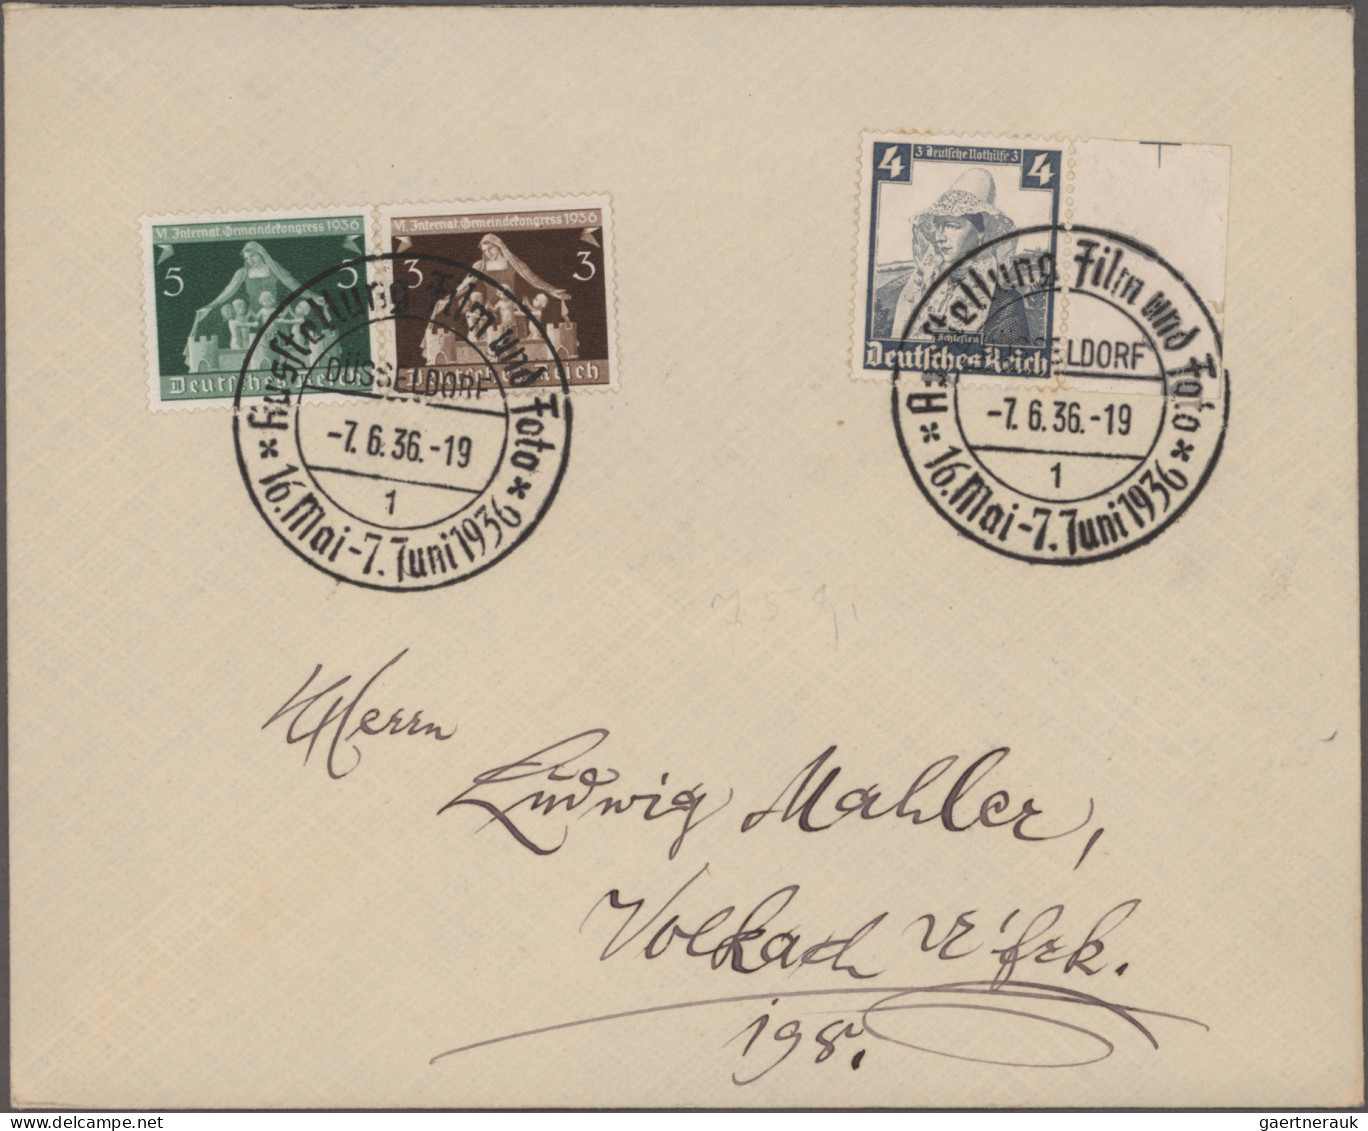 Deutschland: 1870/1945 (ca.), Brief-und Kartenposten aus altem Bestand in 6 Brie